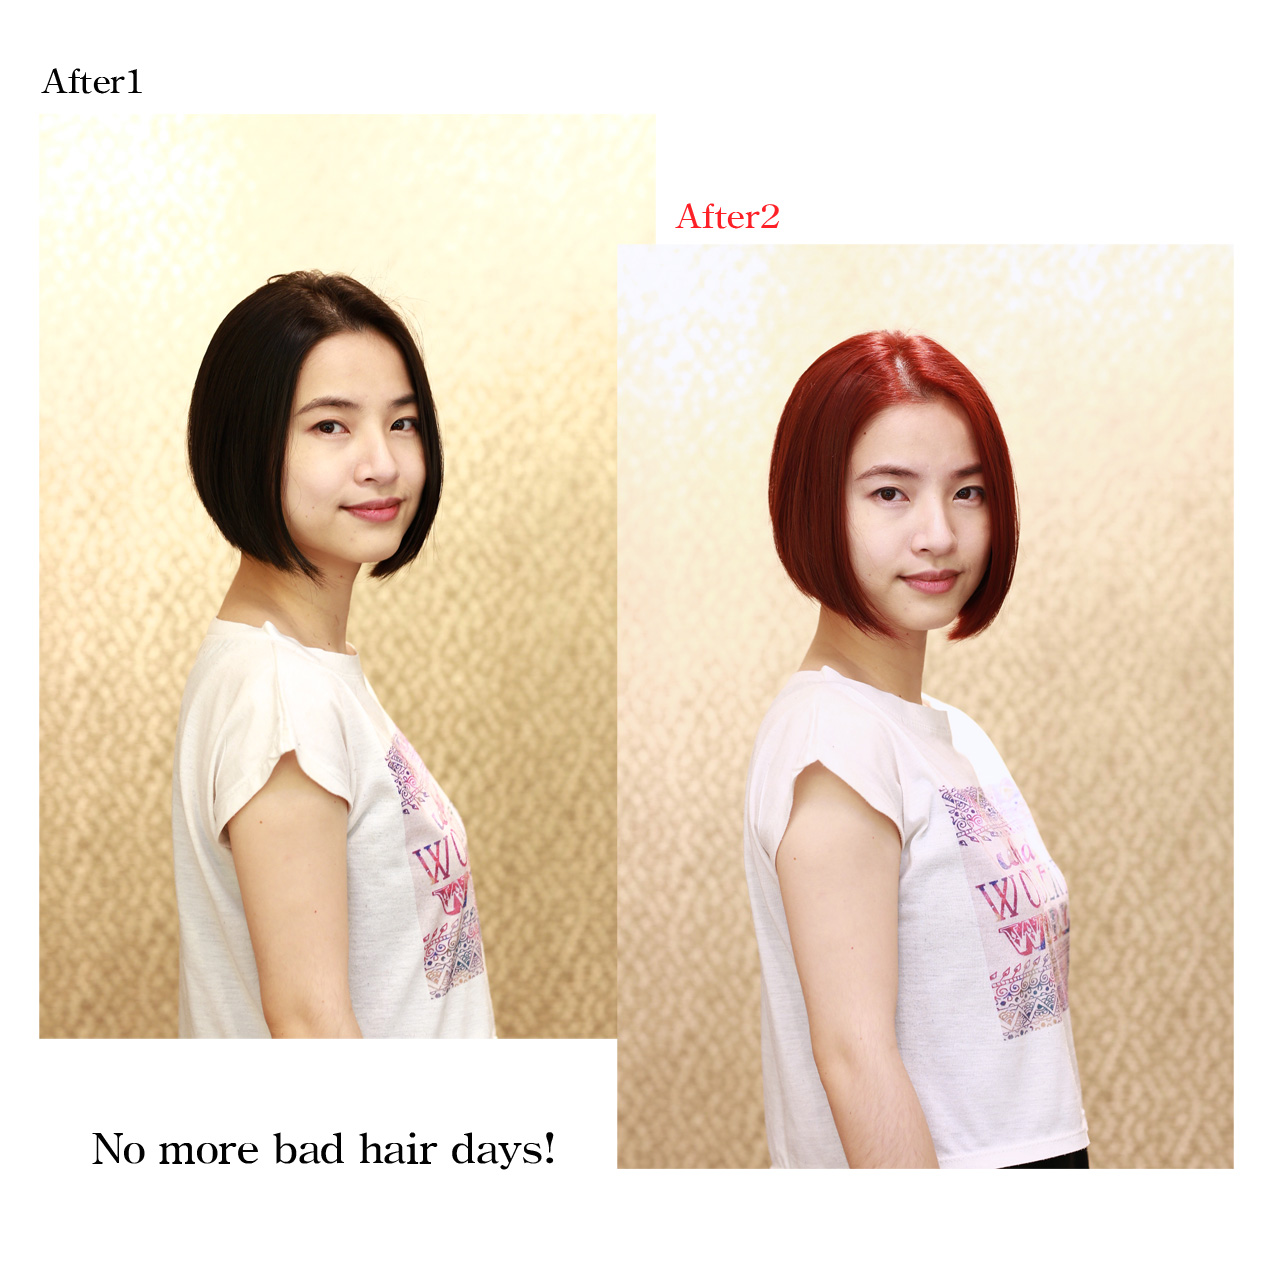 20160410蘇小姐剪染髮前後比照組圖1 -